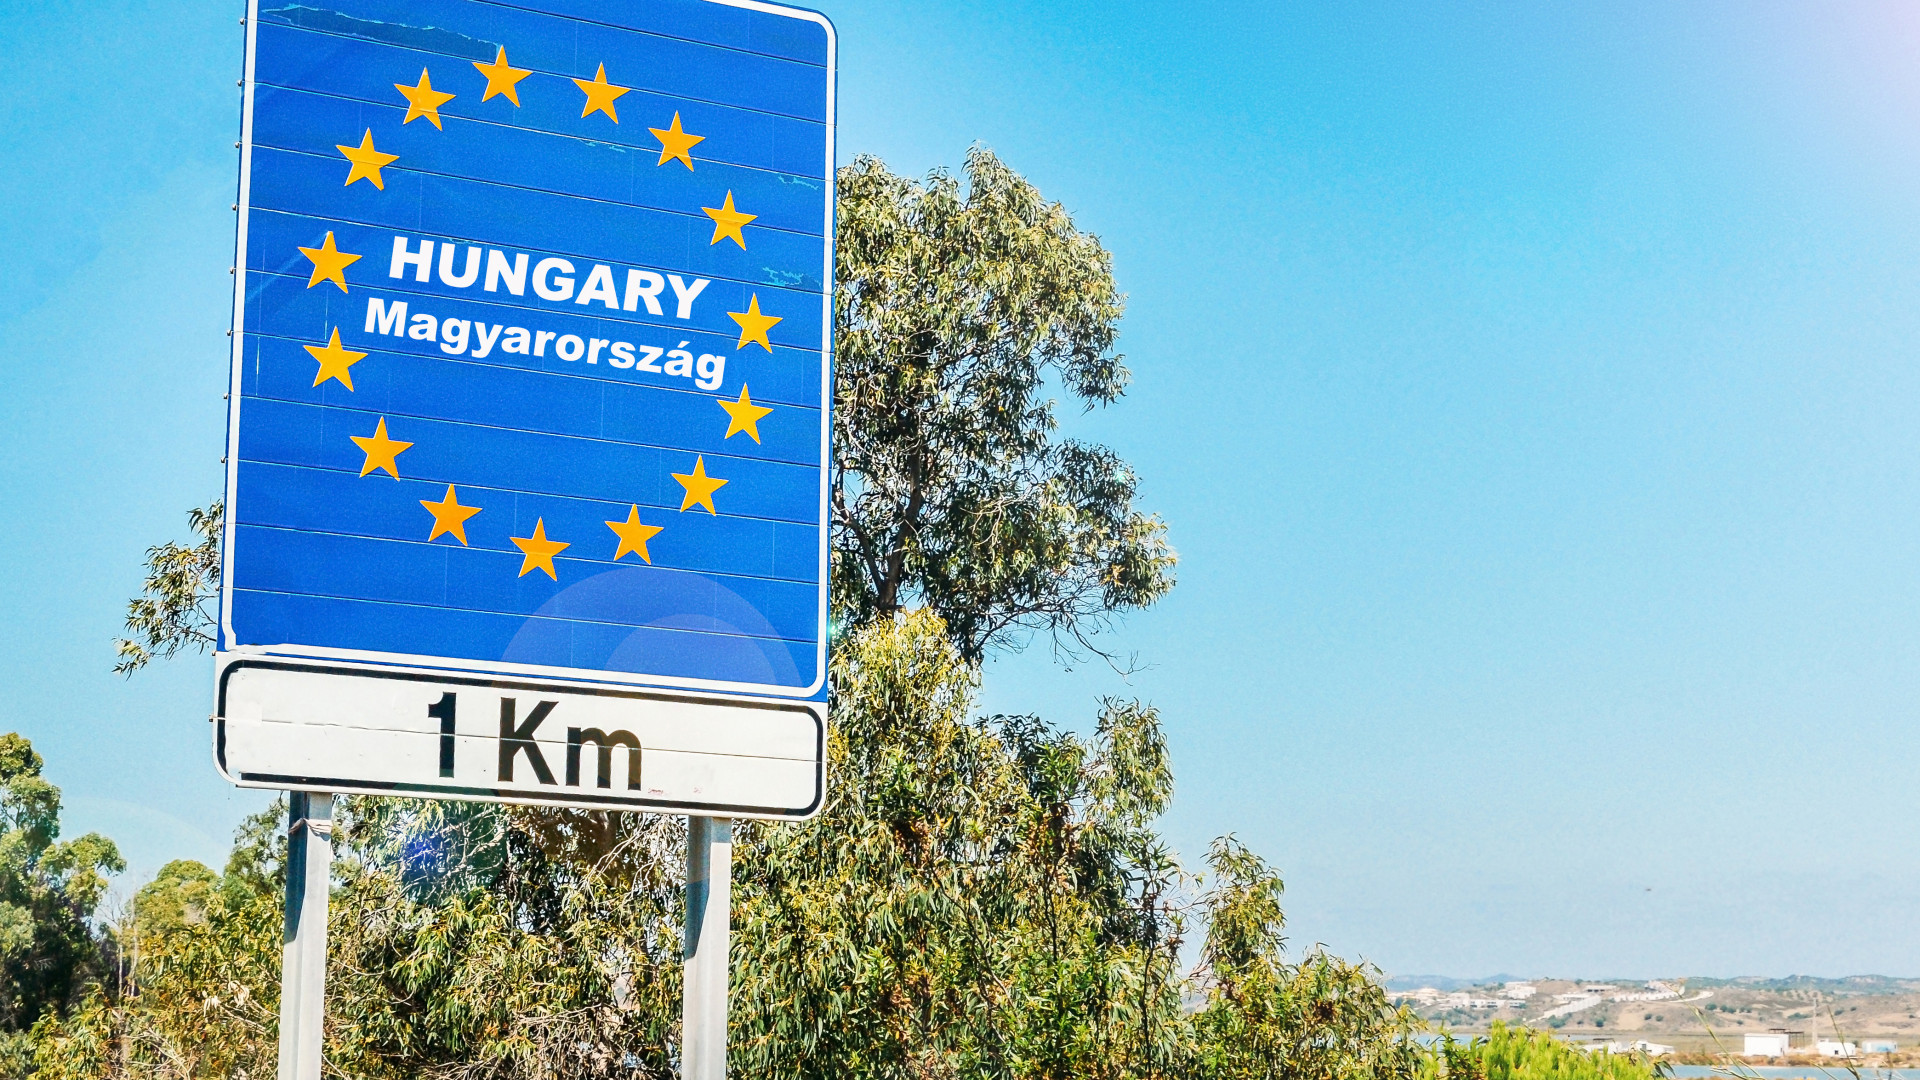 Meghosszabbították a magyar határzárat - december 1-ig érvényes az intézkedés